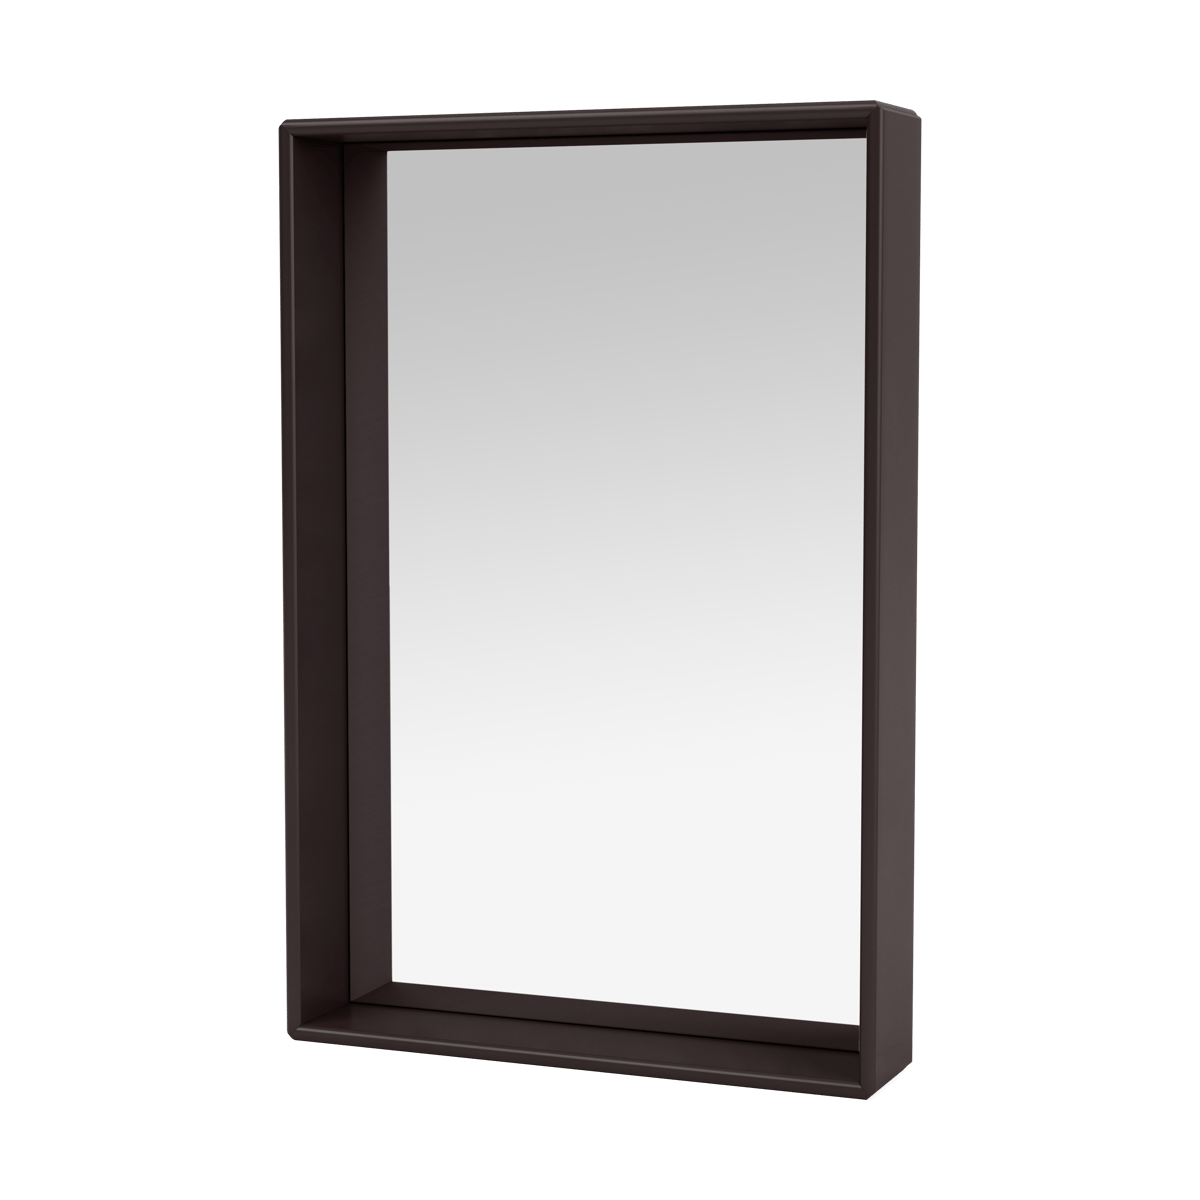 Montana Shelfie colour frame spiegel 46,8x69,6 cm Balsamic